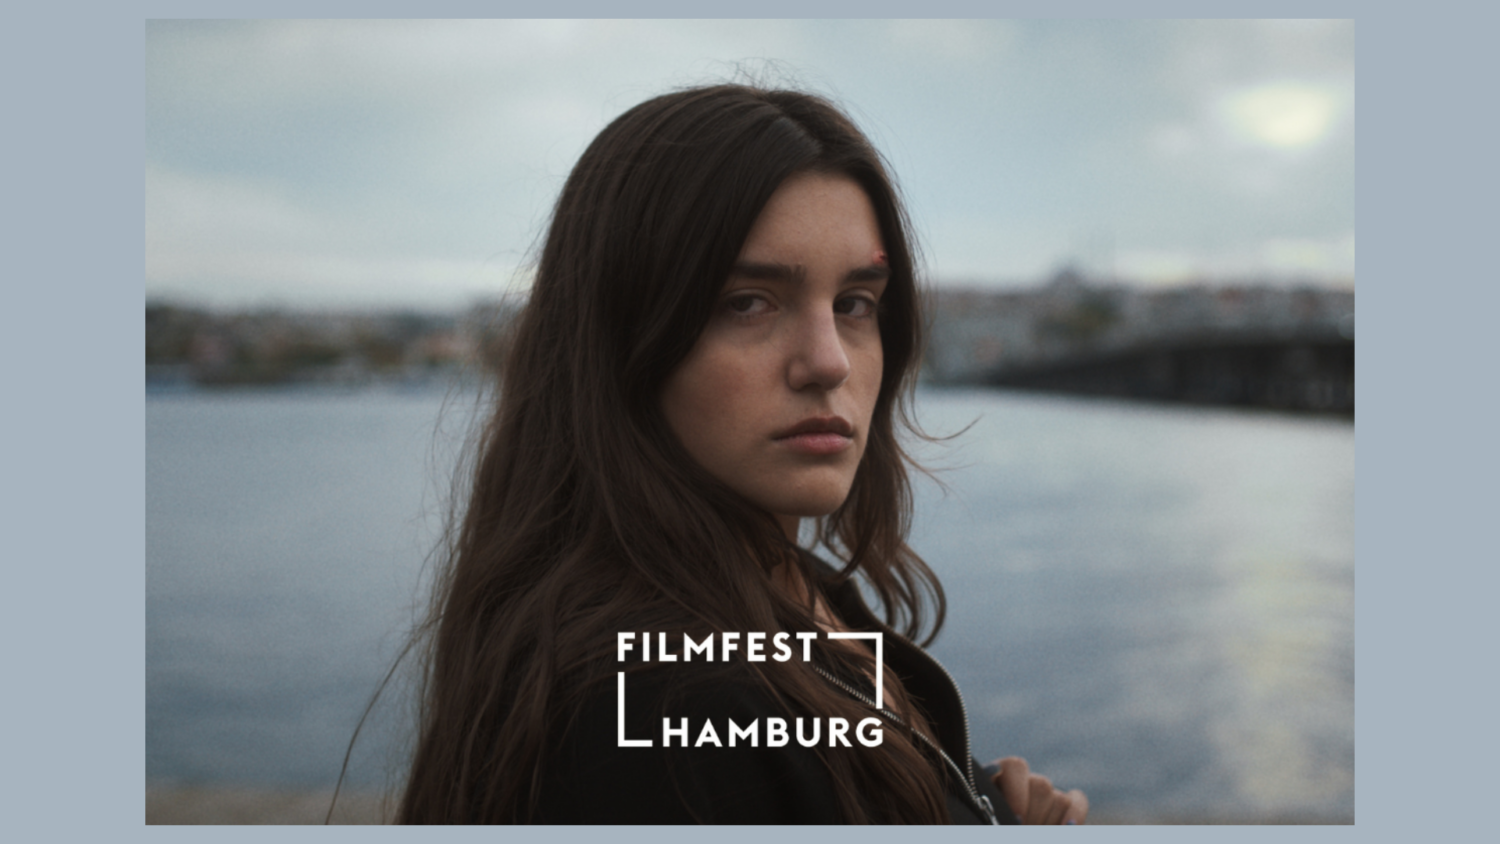 Eine junge Frau, lange braune Haare, skeptischer Blick, blickt über ihre Schulter in die Kamera. Im Hintergrund ein Gewässer, auf das Bild ist der Schriftzug "Filfest Hamburg" aufgebracht.